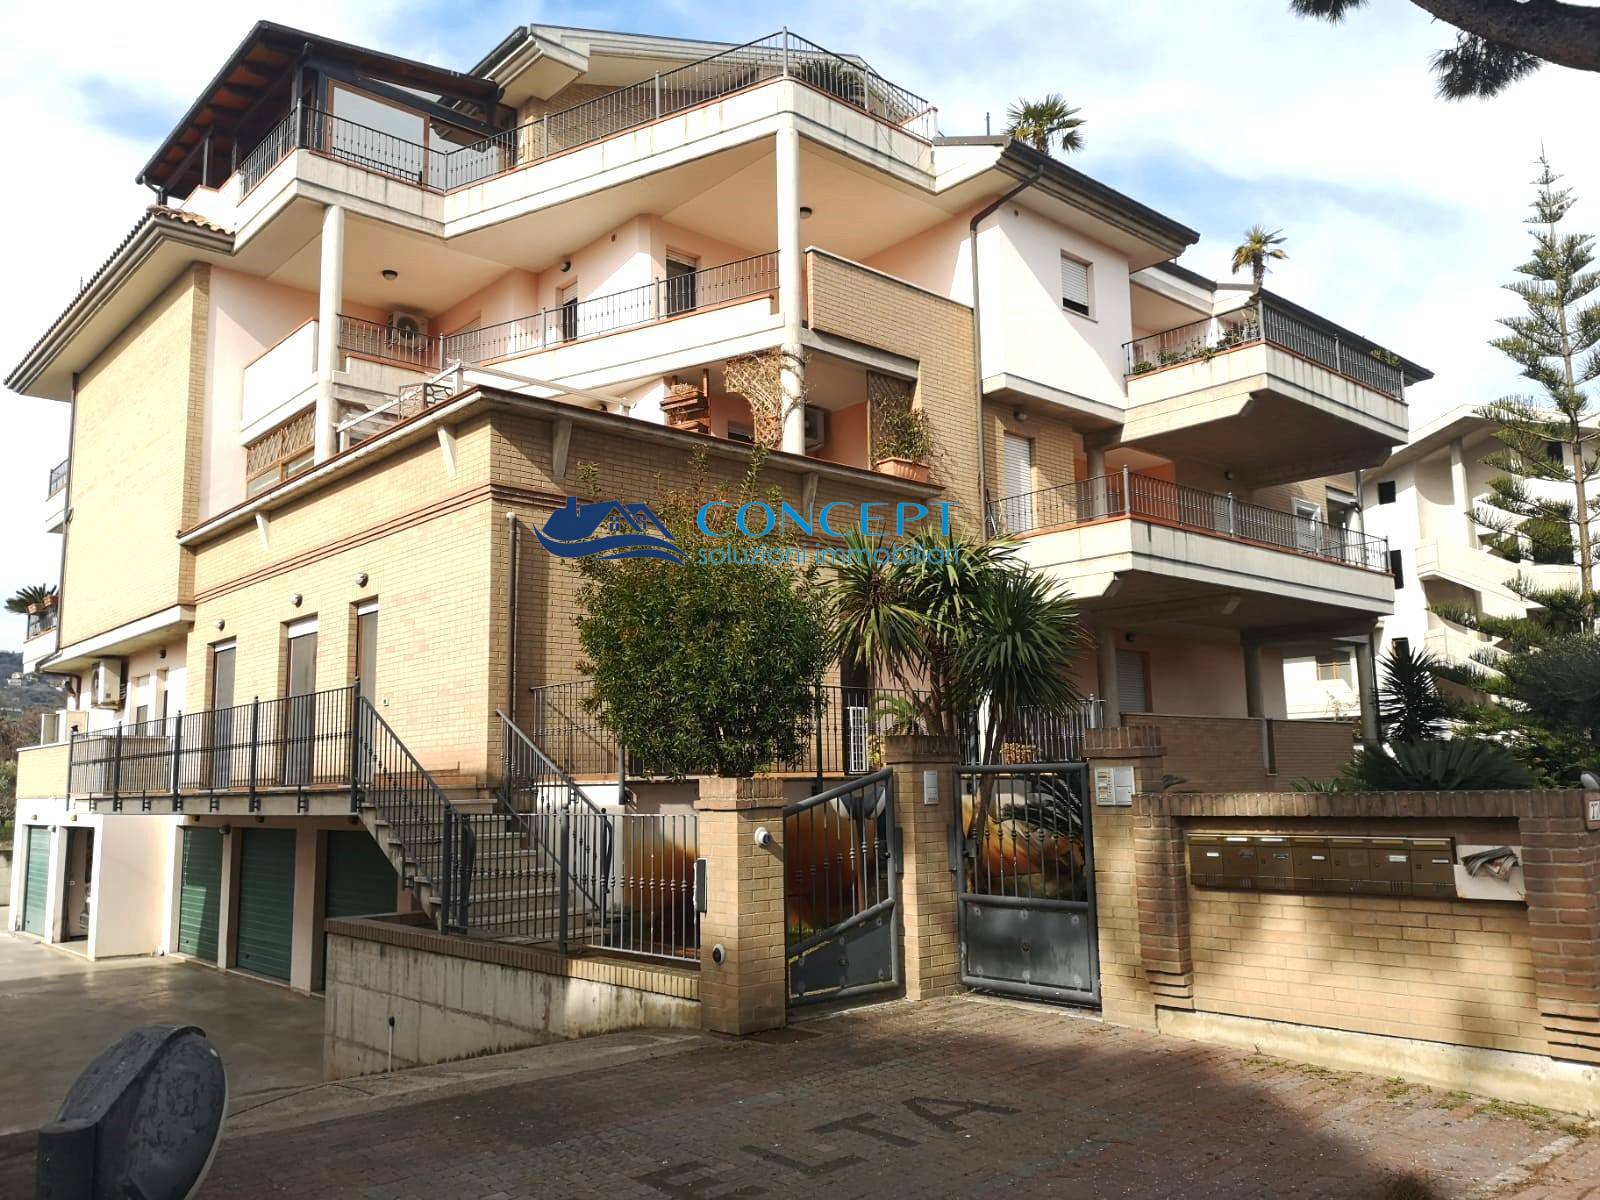 Appartamento in vendita a Martinsicuro, 4 locali, prezzo € 220.000 | PortaleAgenzieImmobiliari.it